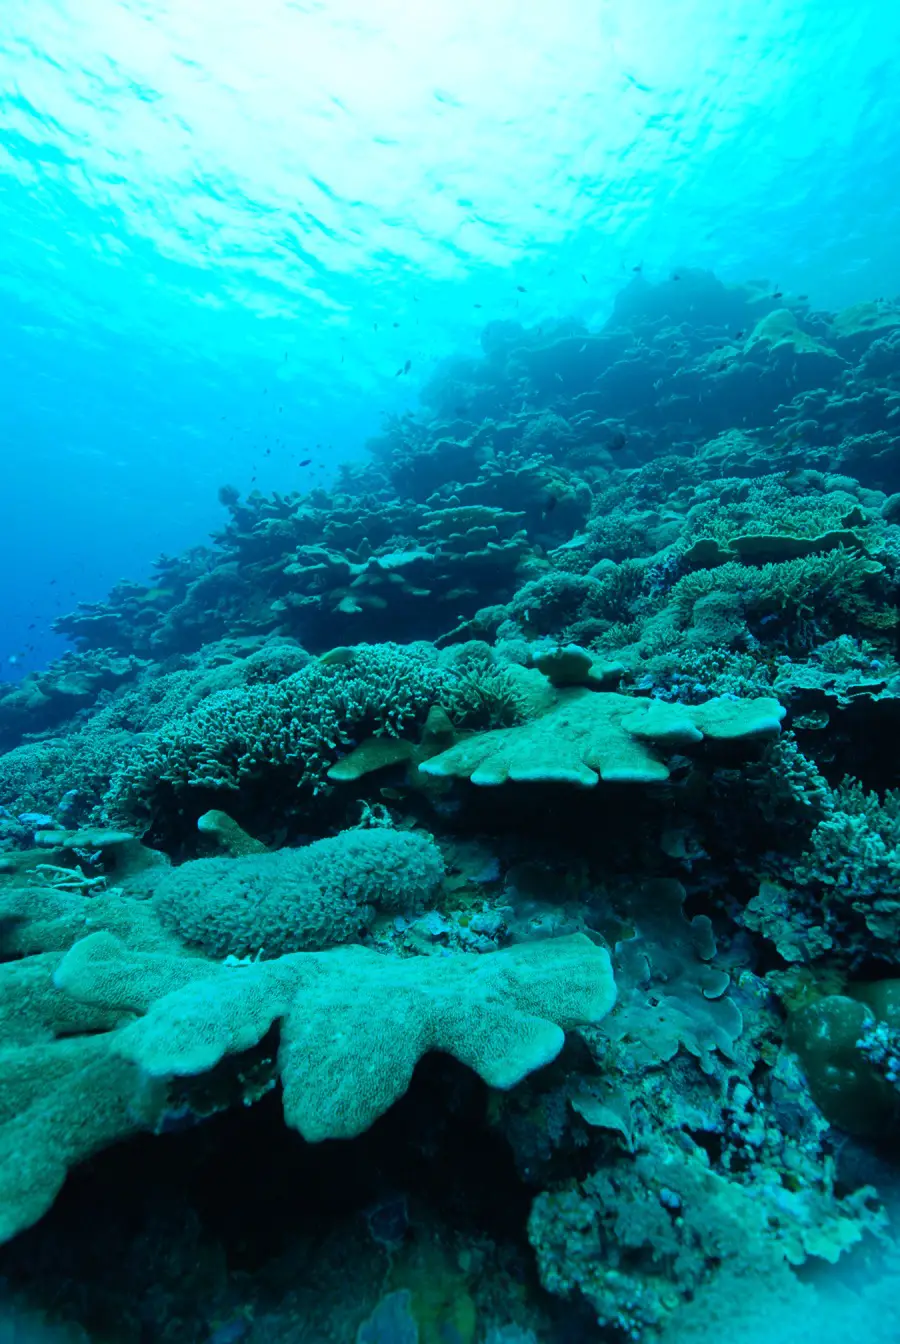 Les récifs mésophotiques, également connus sous le nom de récifs crépusculaires, existent dans un état perpétuel de bleu pâle.